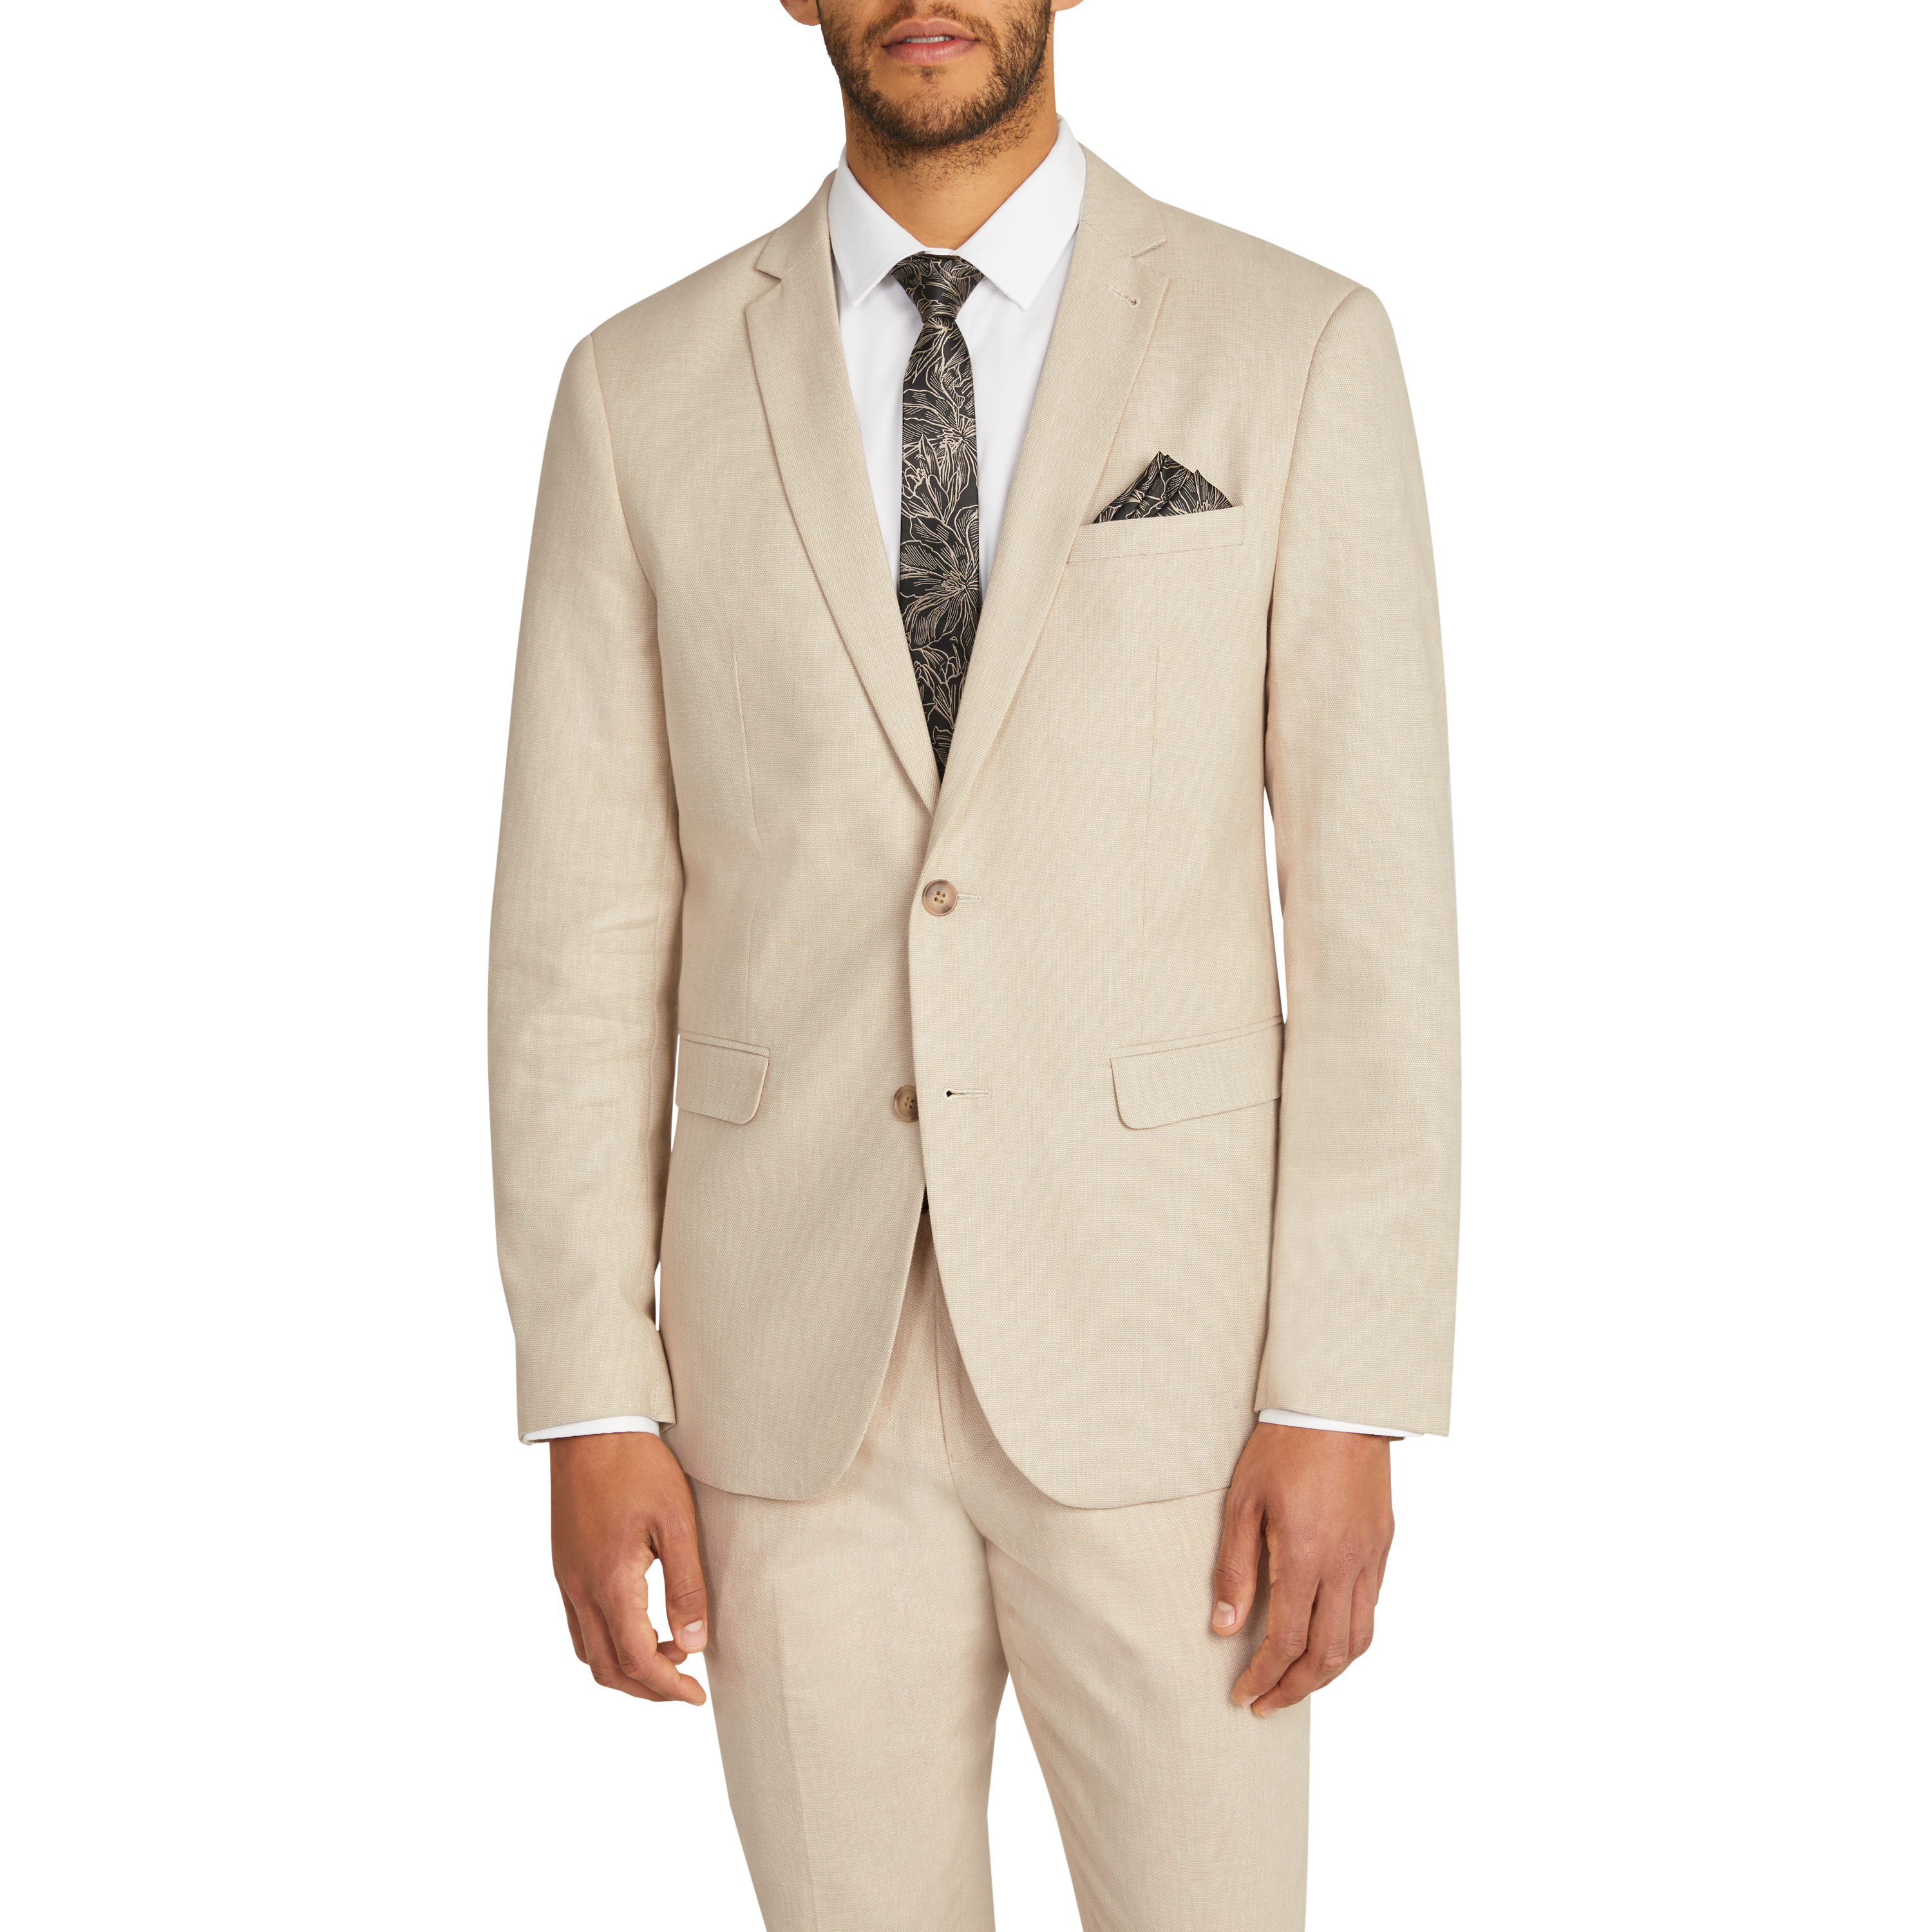 NoName Tie/accessory Beige Single MEN FASHION Suits & Sets Elegant discount 94% 